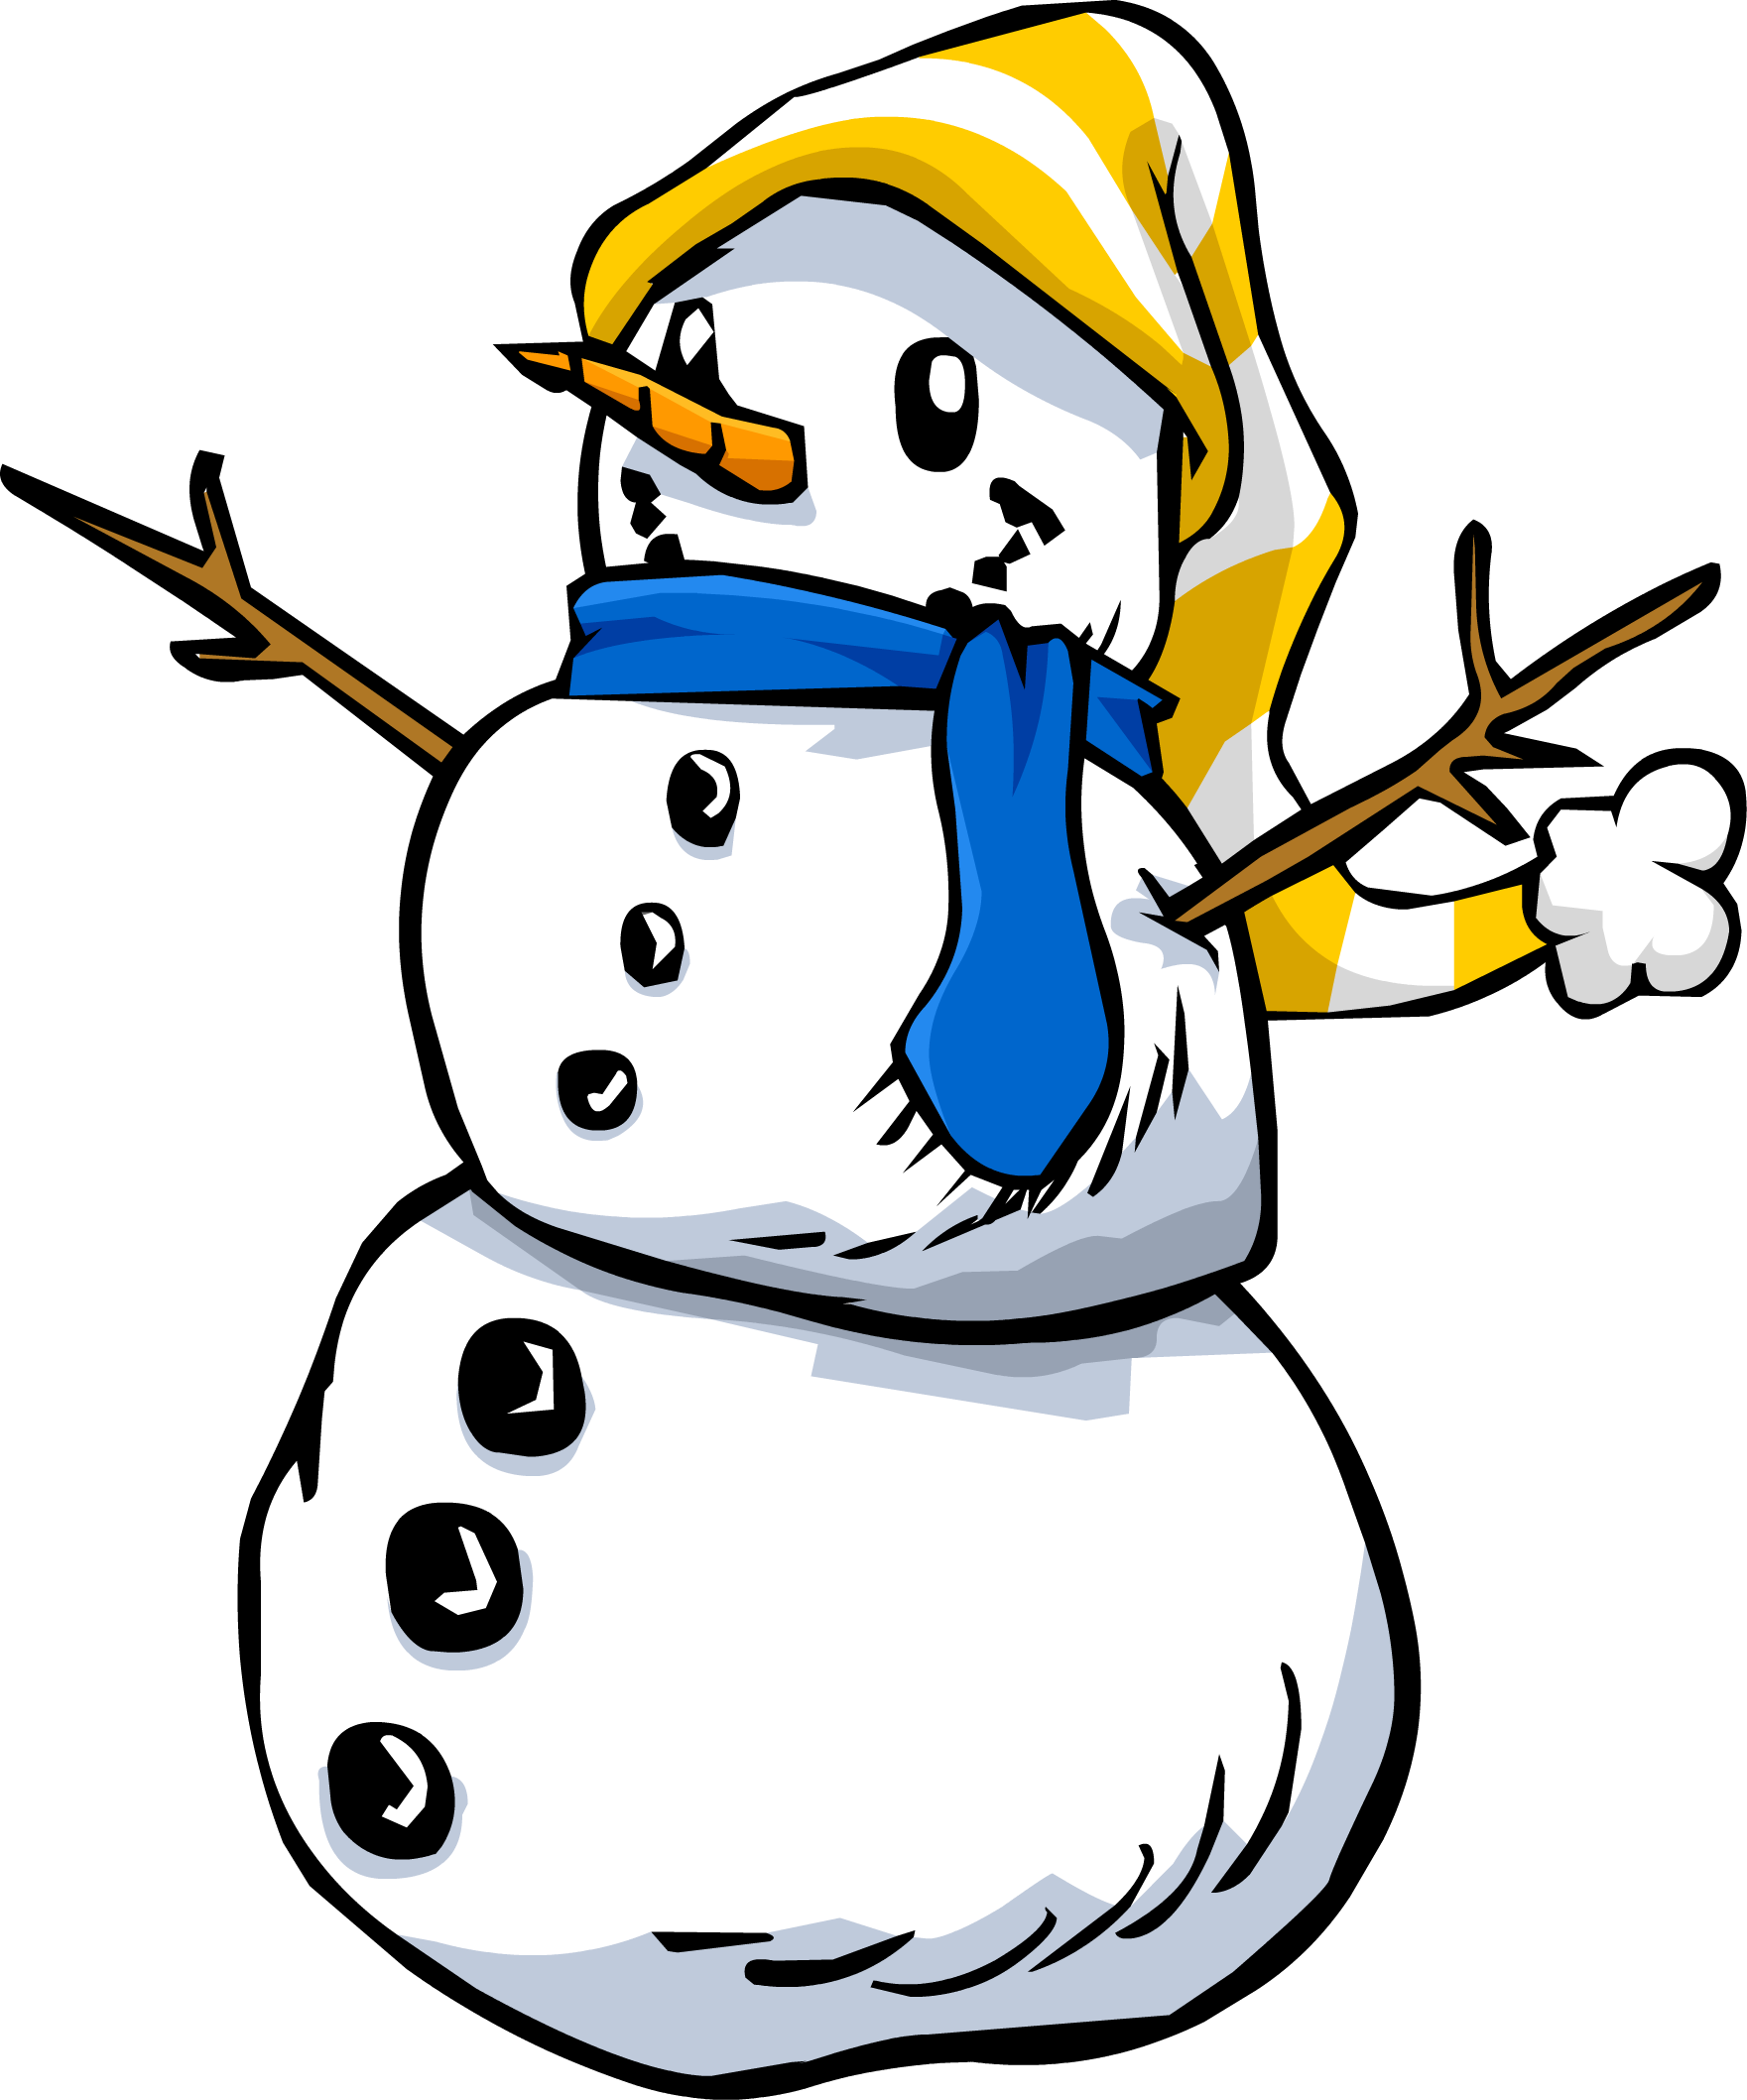 Snowman Sprite 006 - Primitive Snowman (1761x2117), Png Download